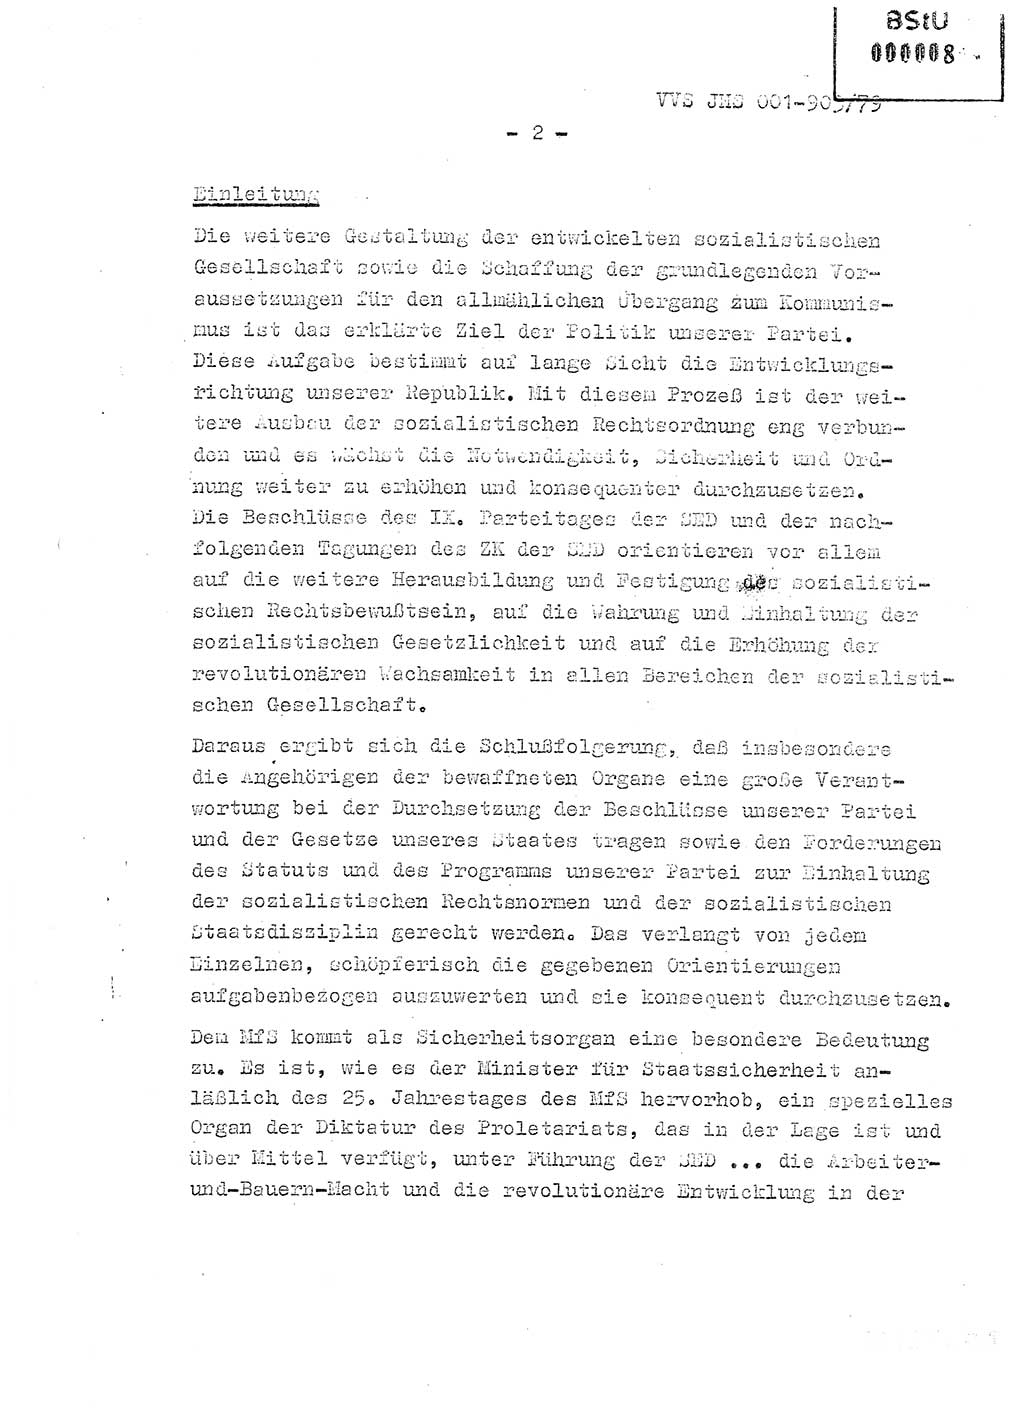 Fachschulabschlußarbeit Oberleutnant Jochen Pfeffer (HA Ⅸ/AGL), Ministerium für Staatssicherheit (MfS) [Deutsche Demokratische Republik (DDR)], Juristische Hochschule (JHS), Vertrauliche Verschlußsache (VVS) 001-903/79, Potsdam 1979, Seite 2 (FS-Abschl.-Arb. MfS DDR JHS VVS 001-903/79 1979, S. 2)